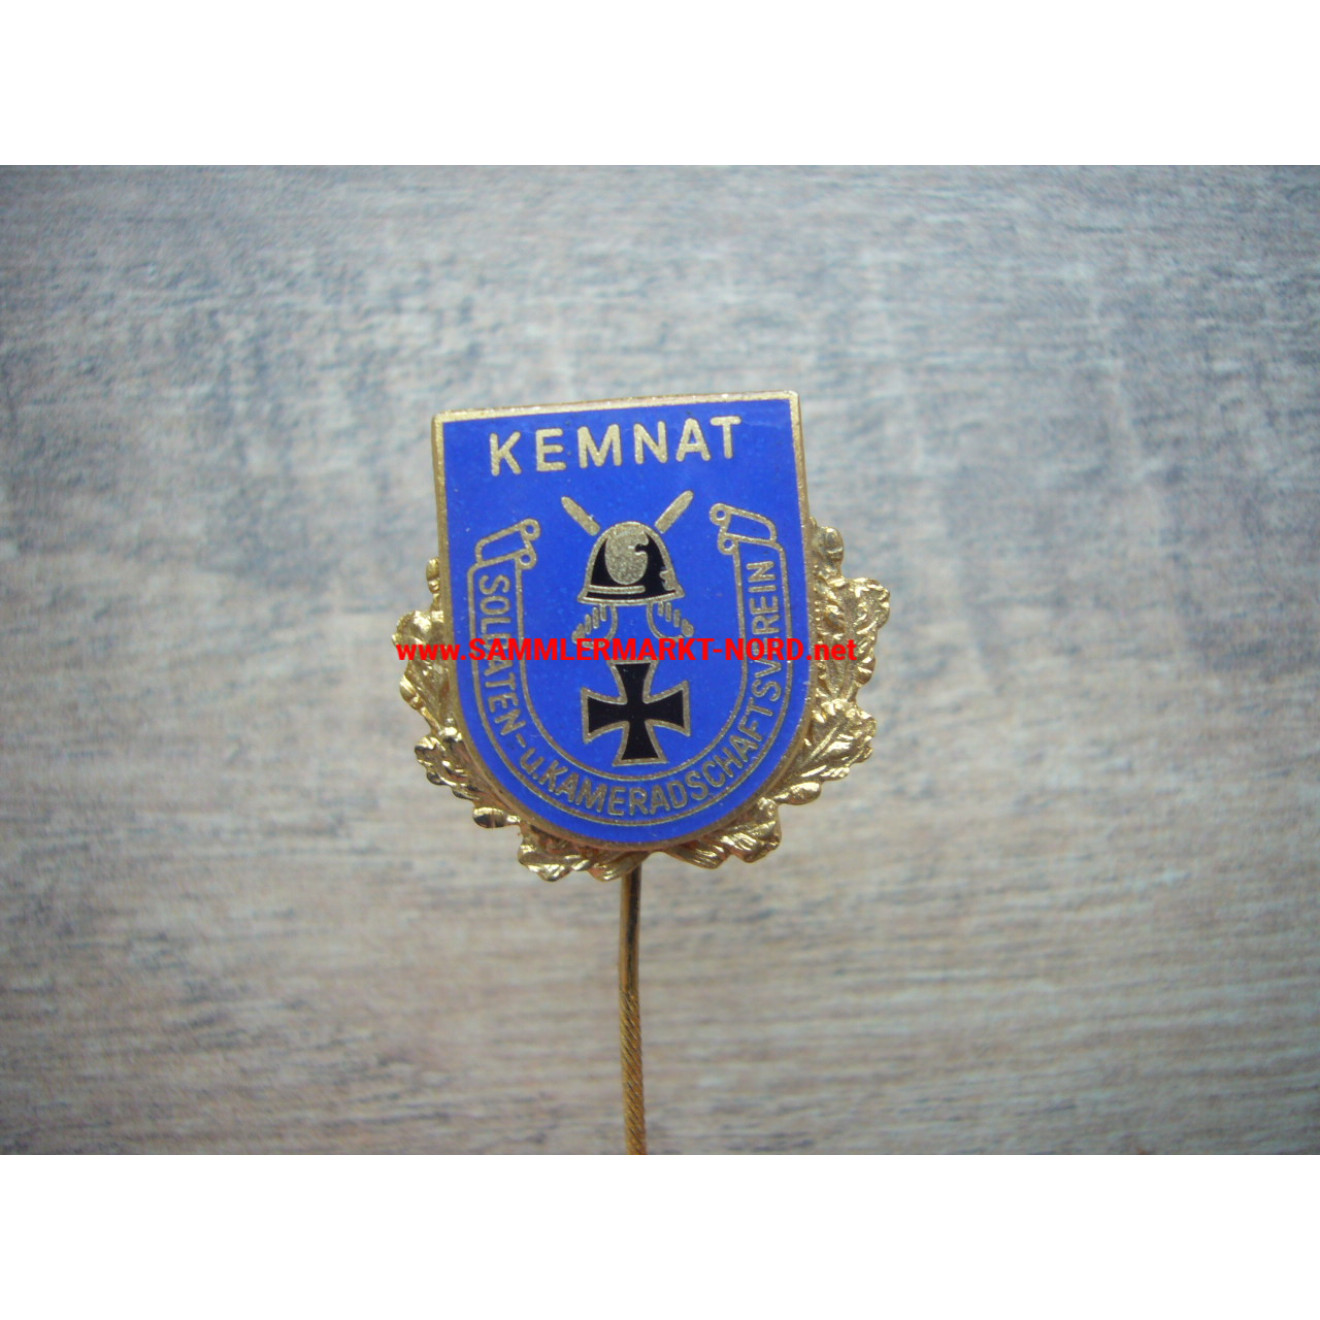 Soldaten- und Kameradschaftsverein Kemnat - Goldene Ehrennadel